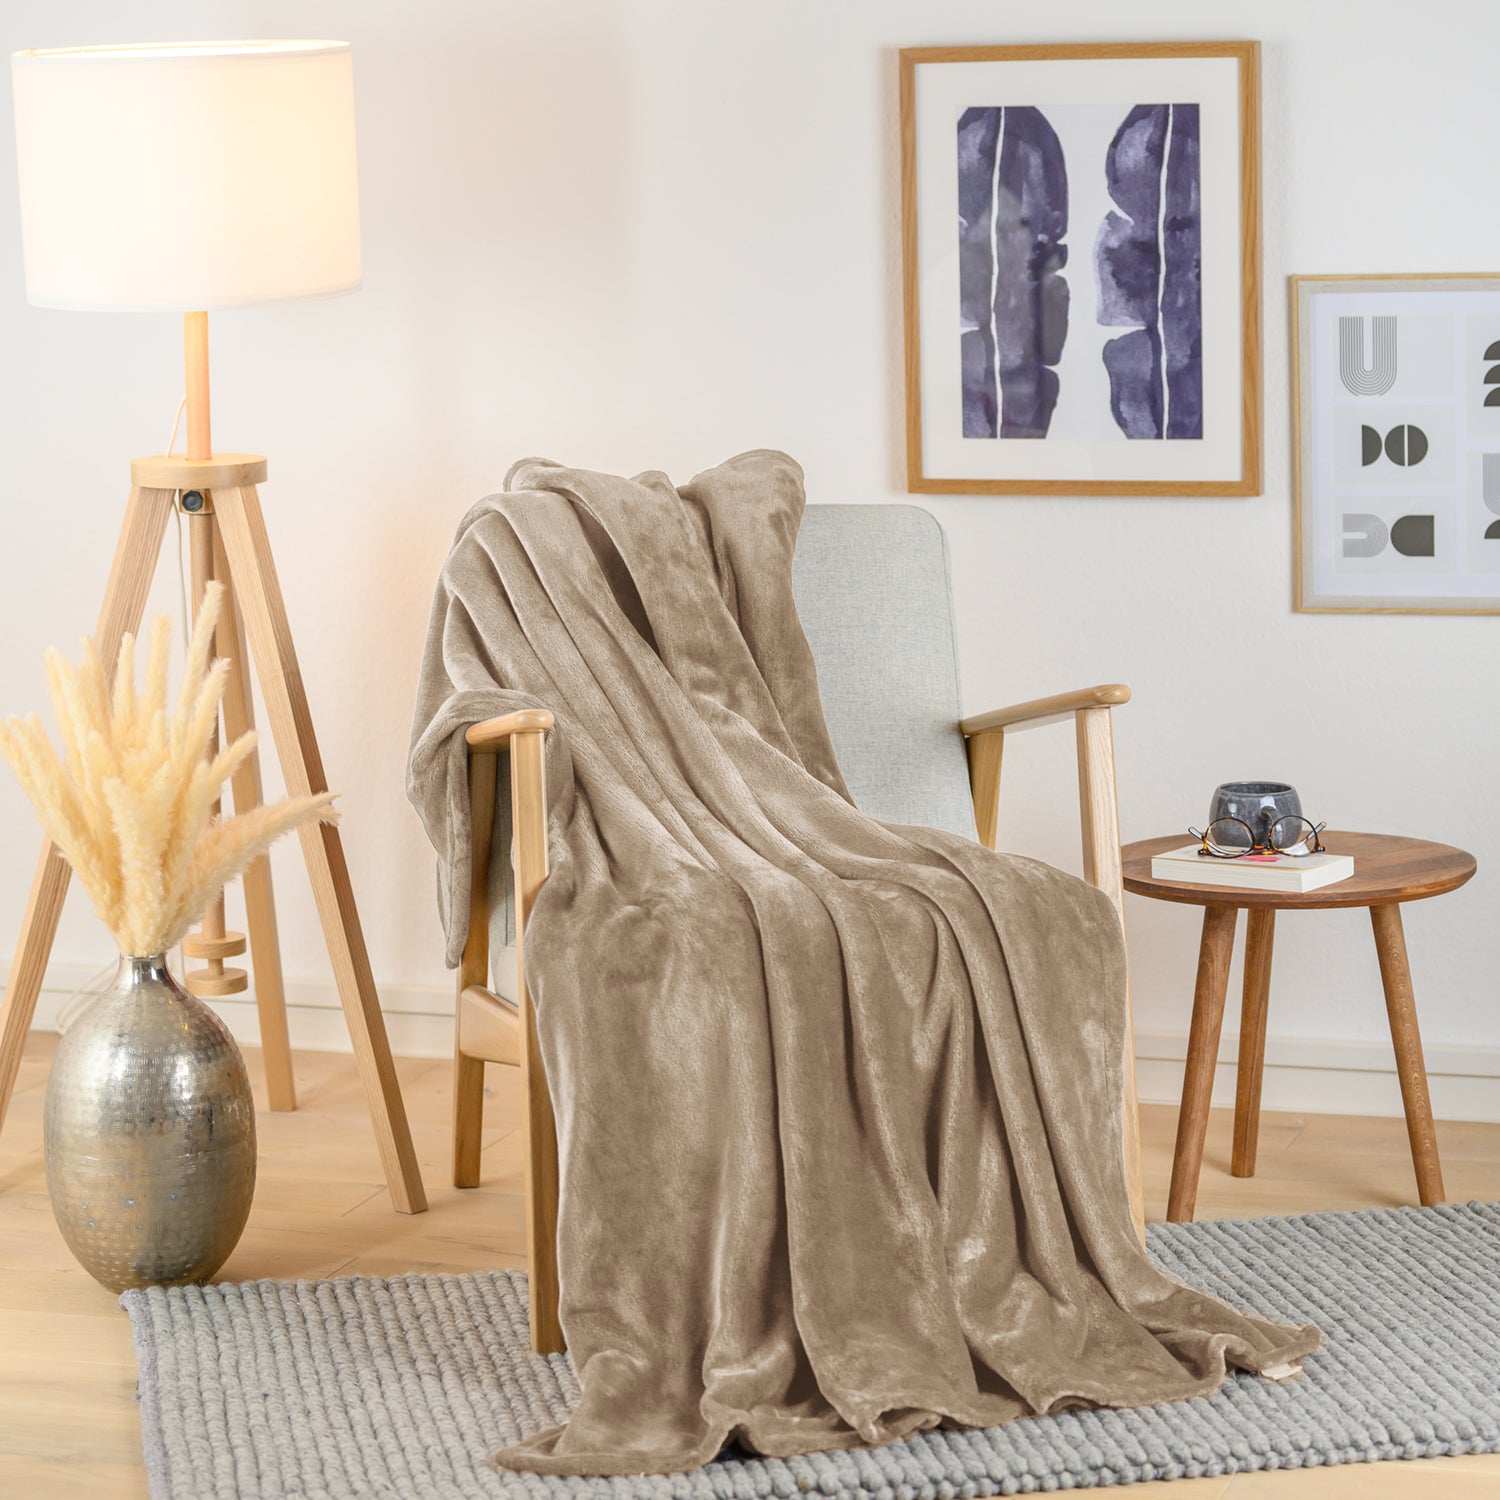 Olivgrüne Fleece-Kuscheldecke, stilvoll über einen Sessel in einem Wohnraum drapiert, mit einer Vase und Pflanzendekoration im Hintergrund.